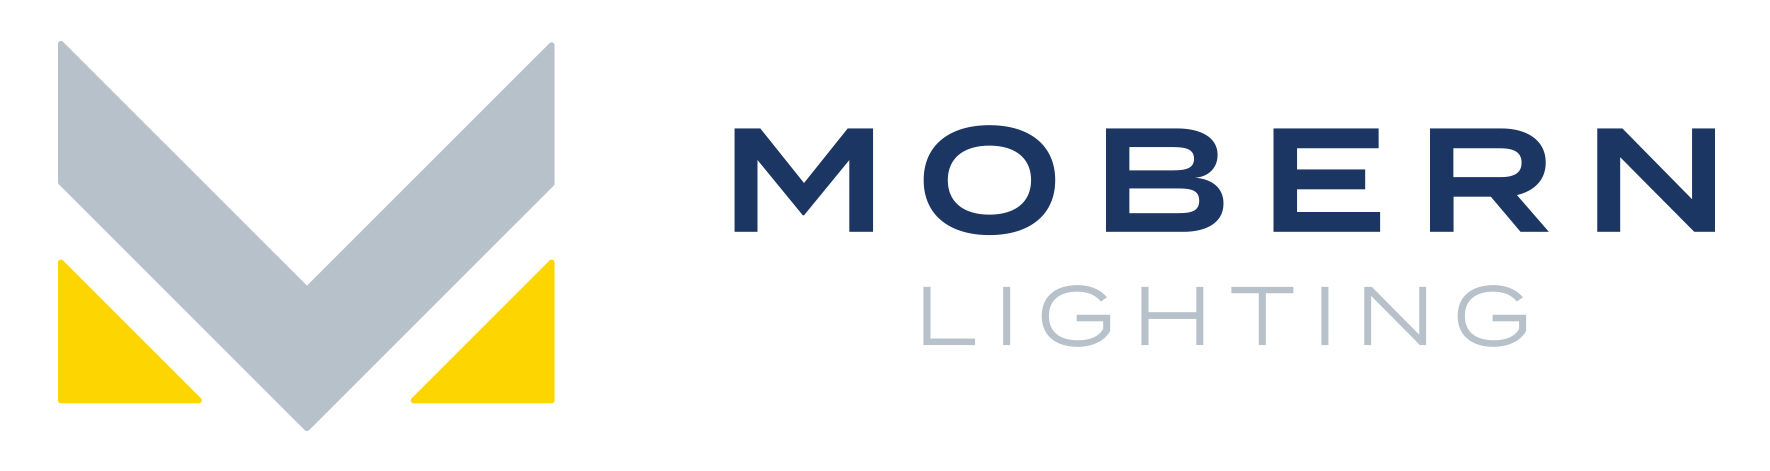 MobernLighting-Logo-Horizontal-RGB image